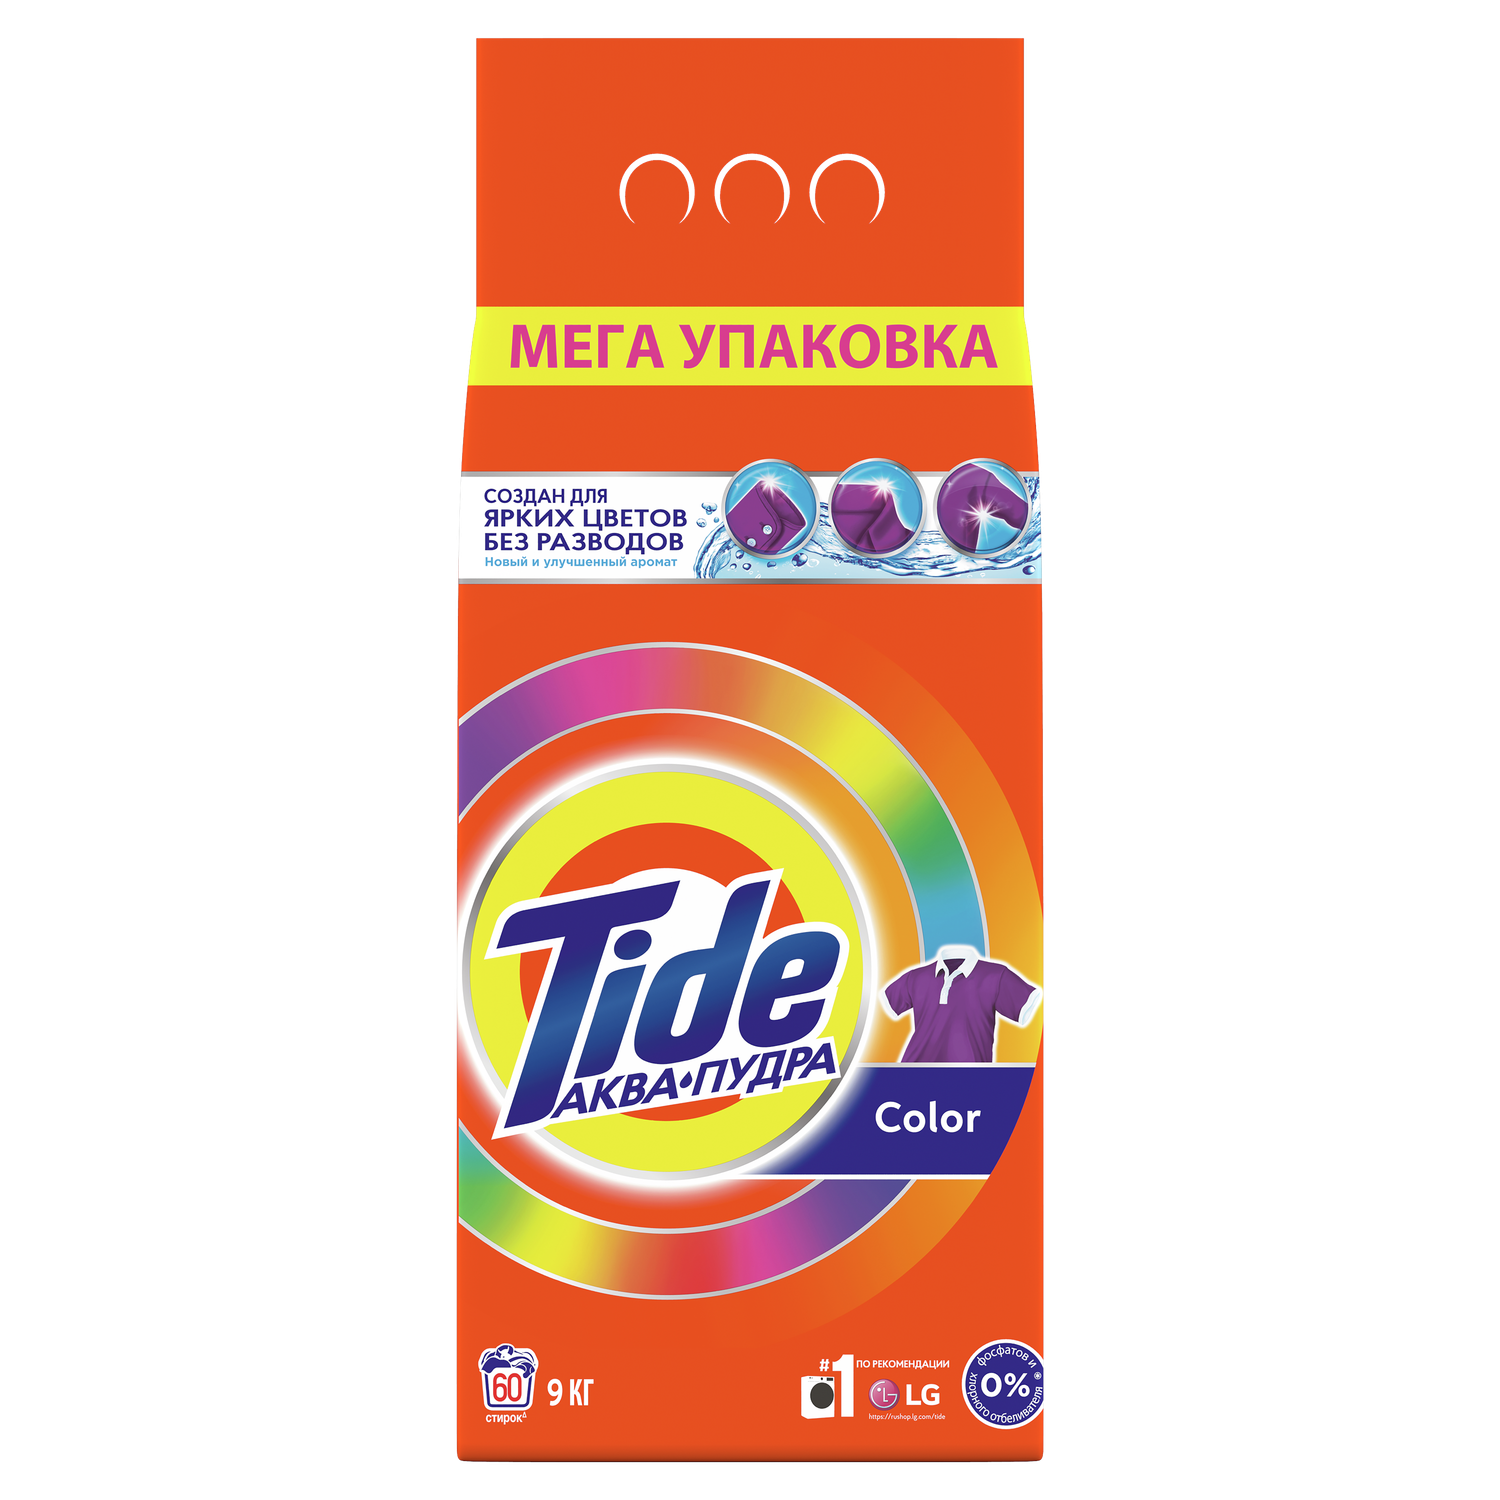 Порошок стиральный Tide Автомат Color 9кг - фото 1